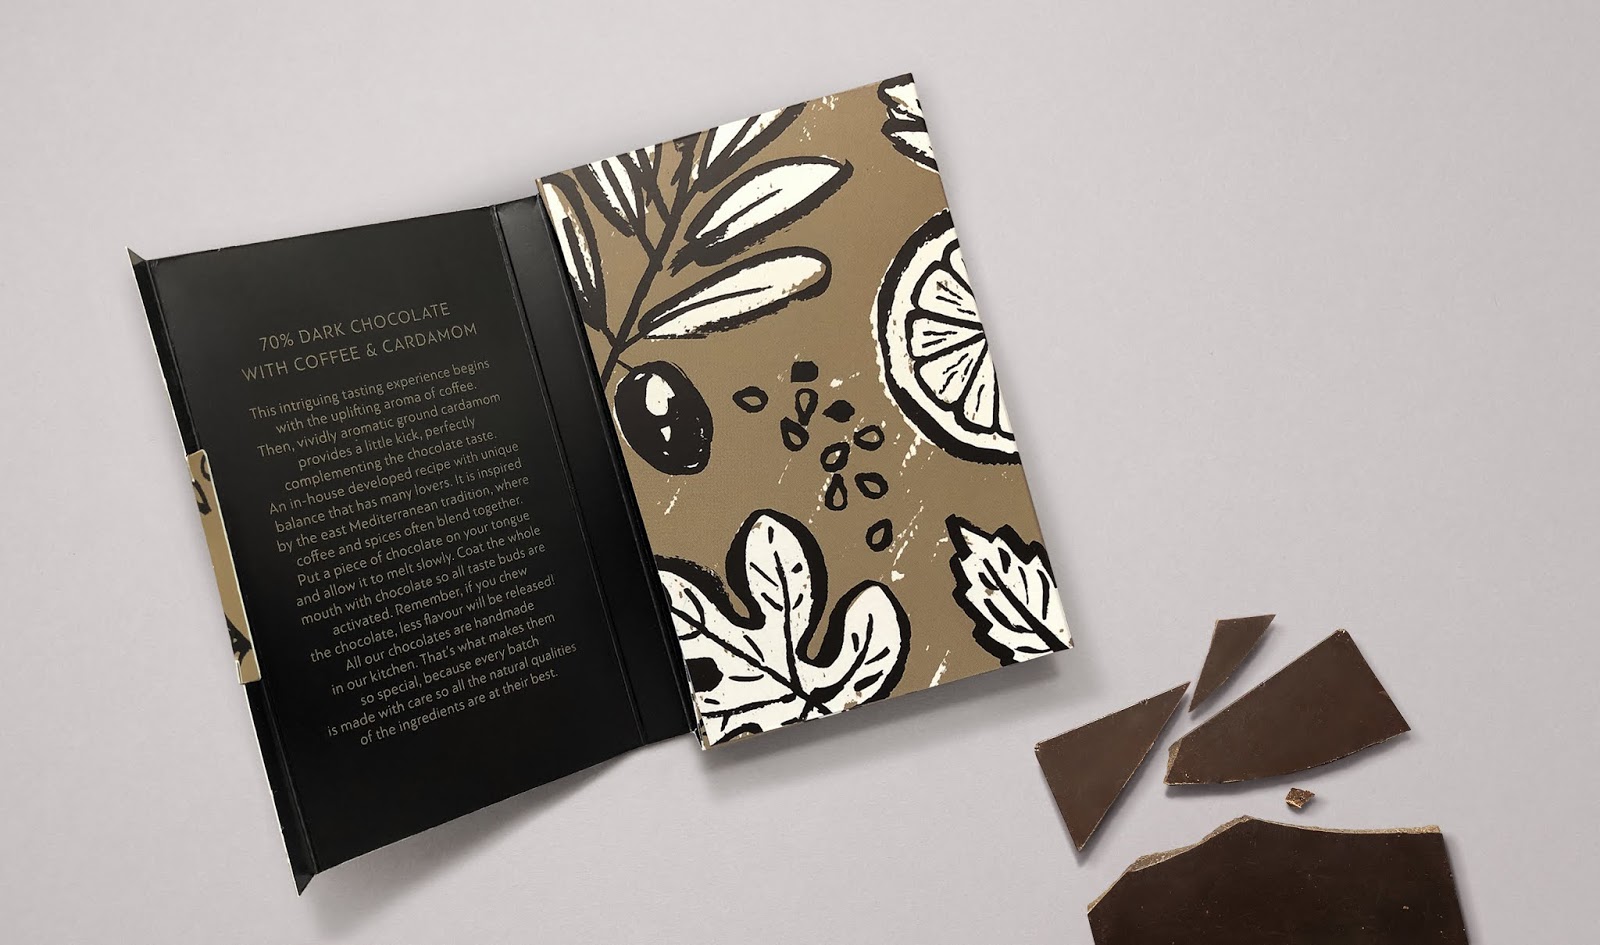 ÉSOPHY巧克力包装设计